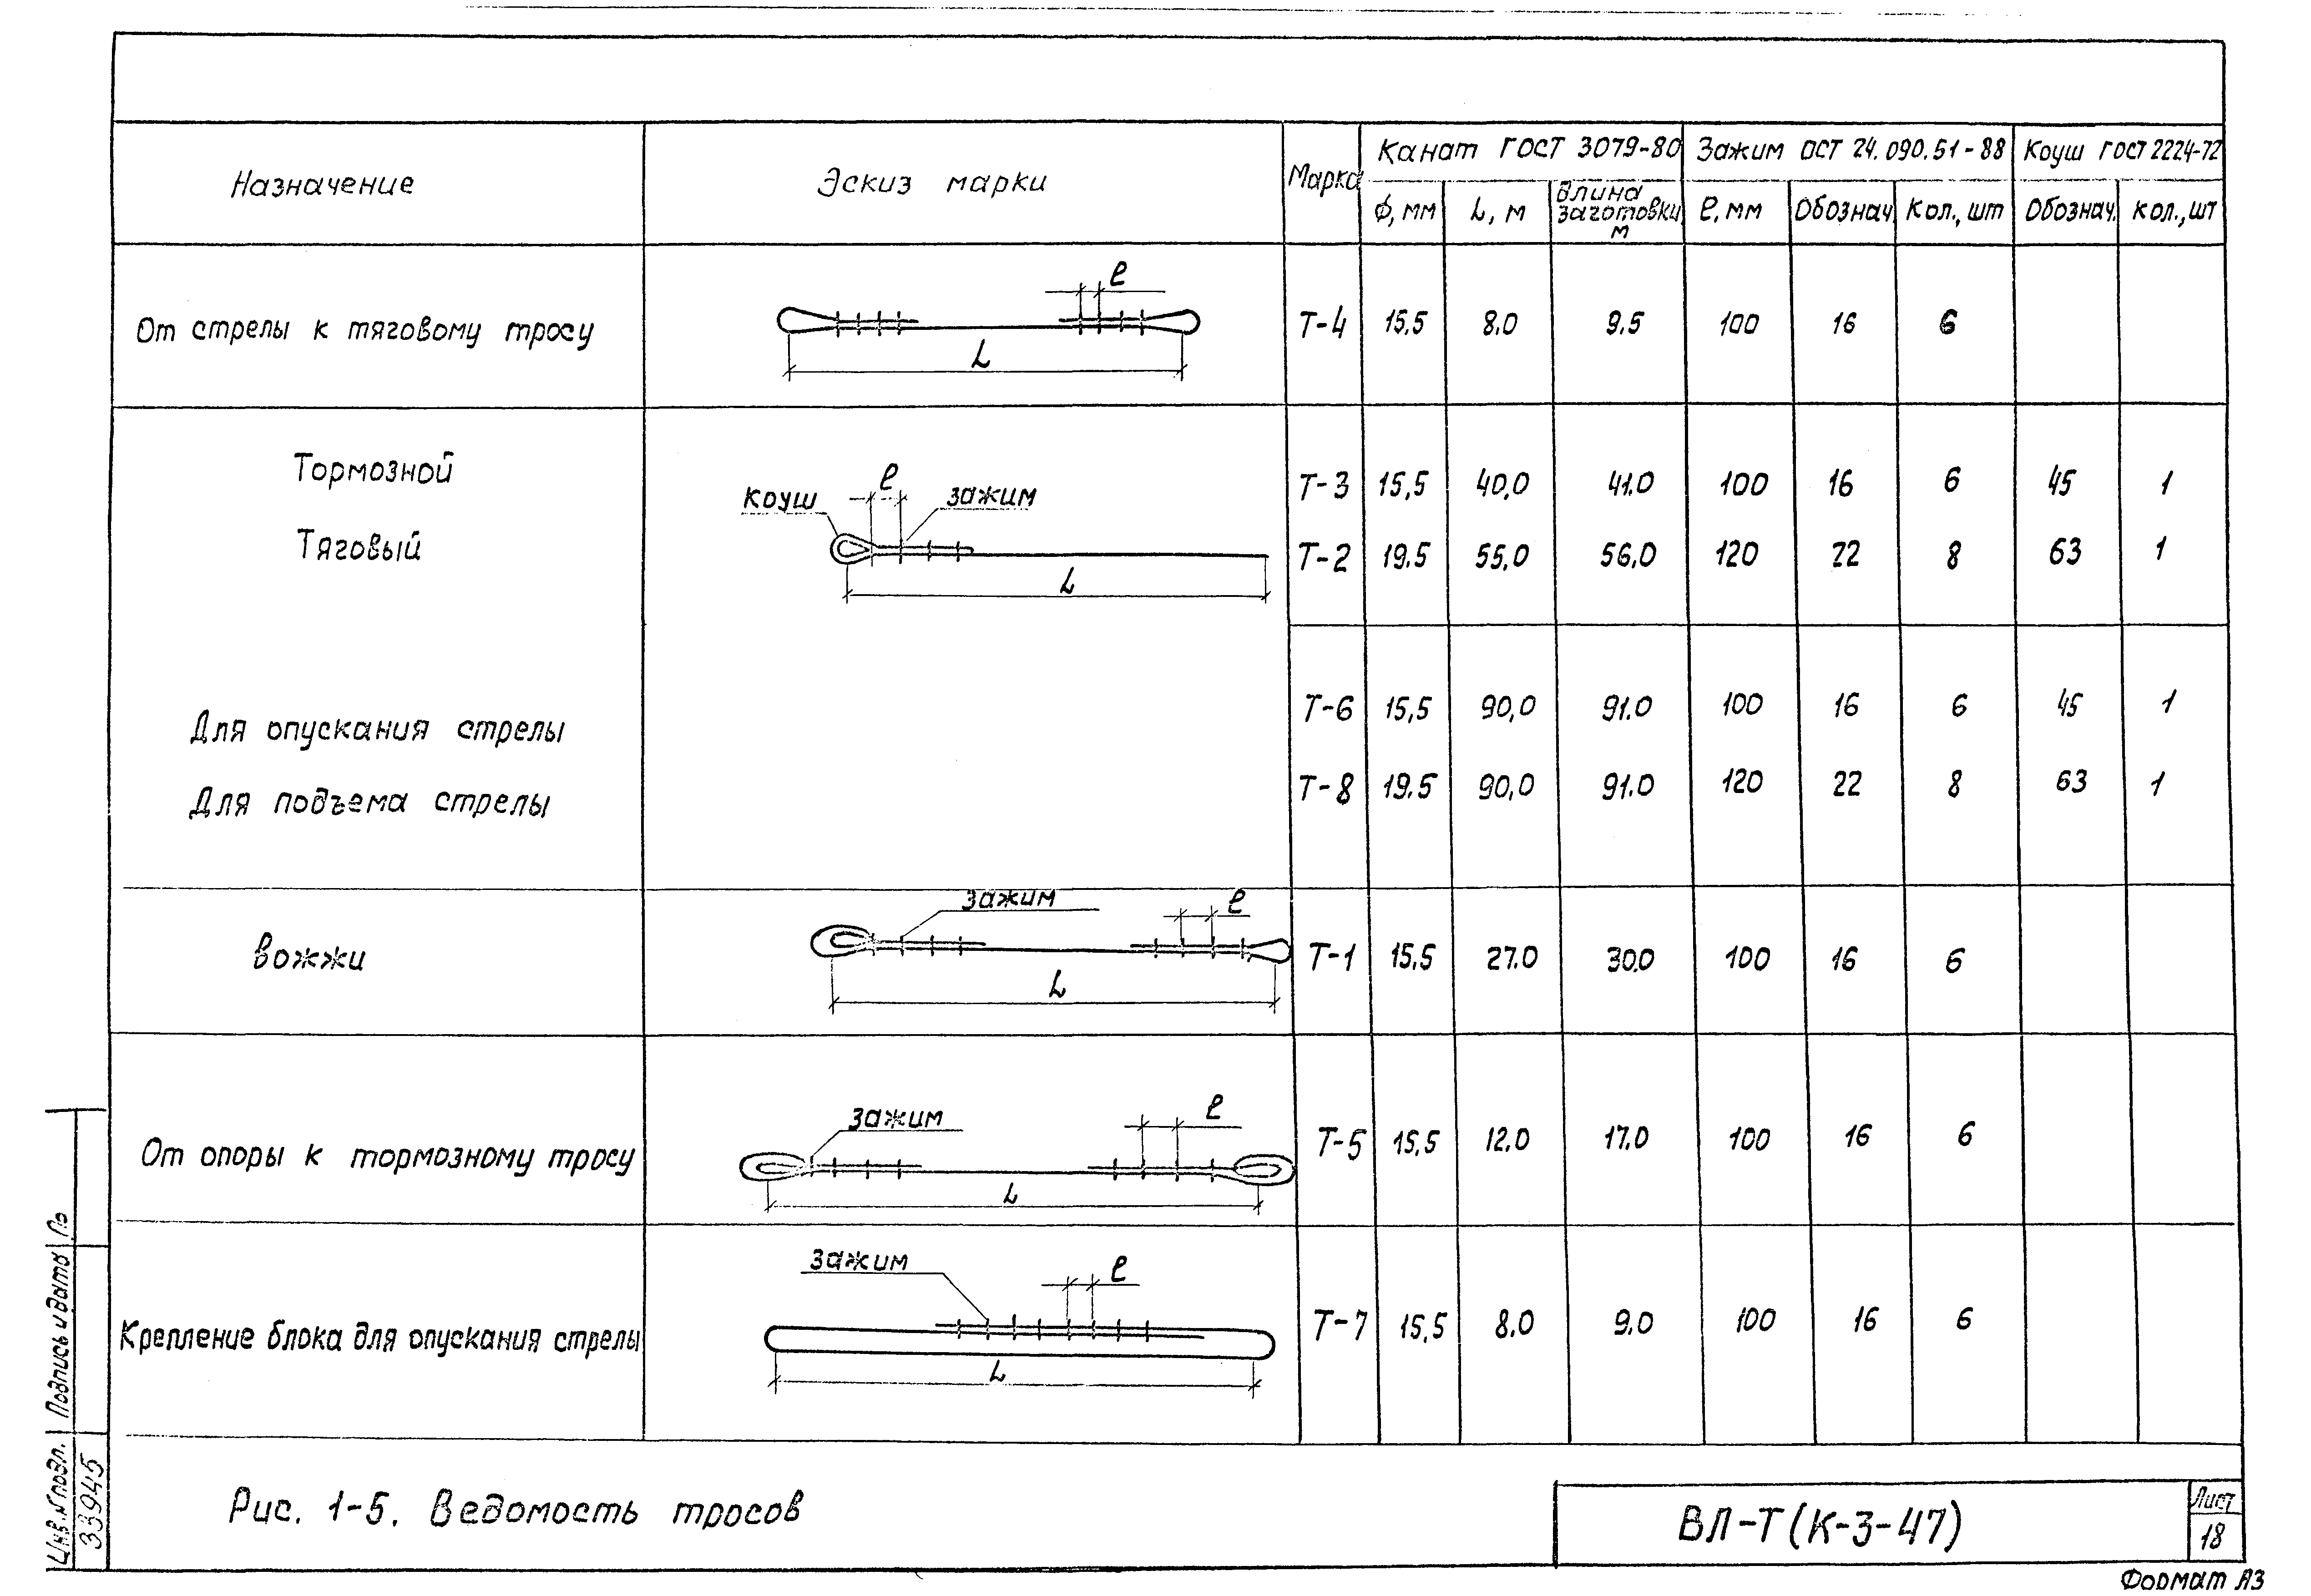 Технологическая карта К-3-47-1